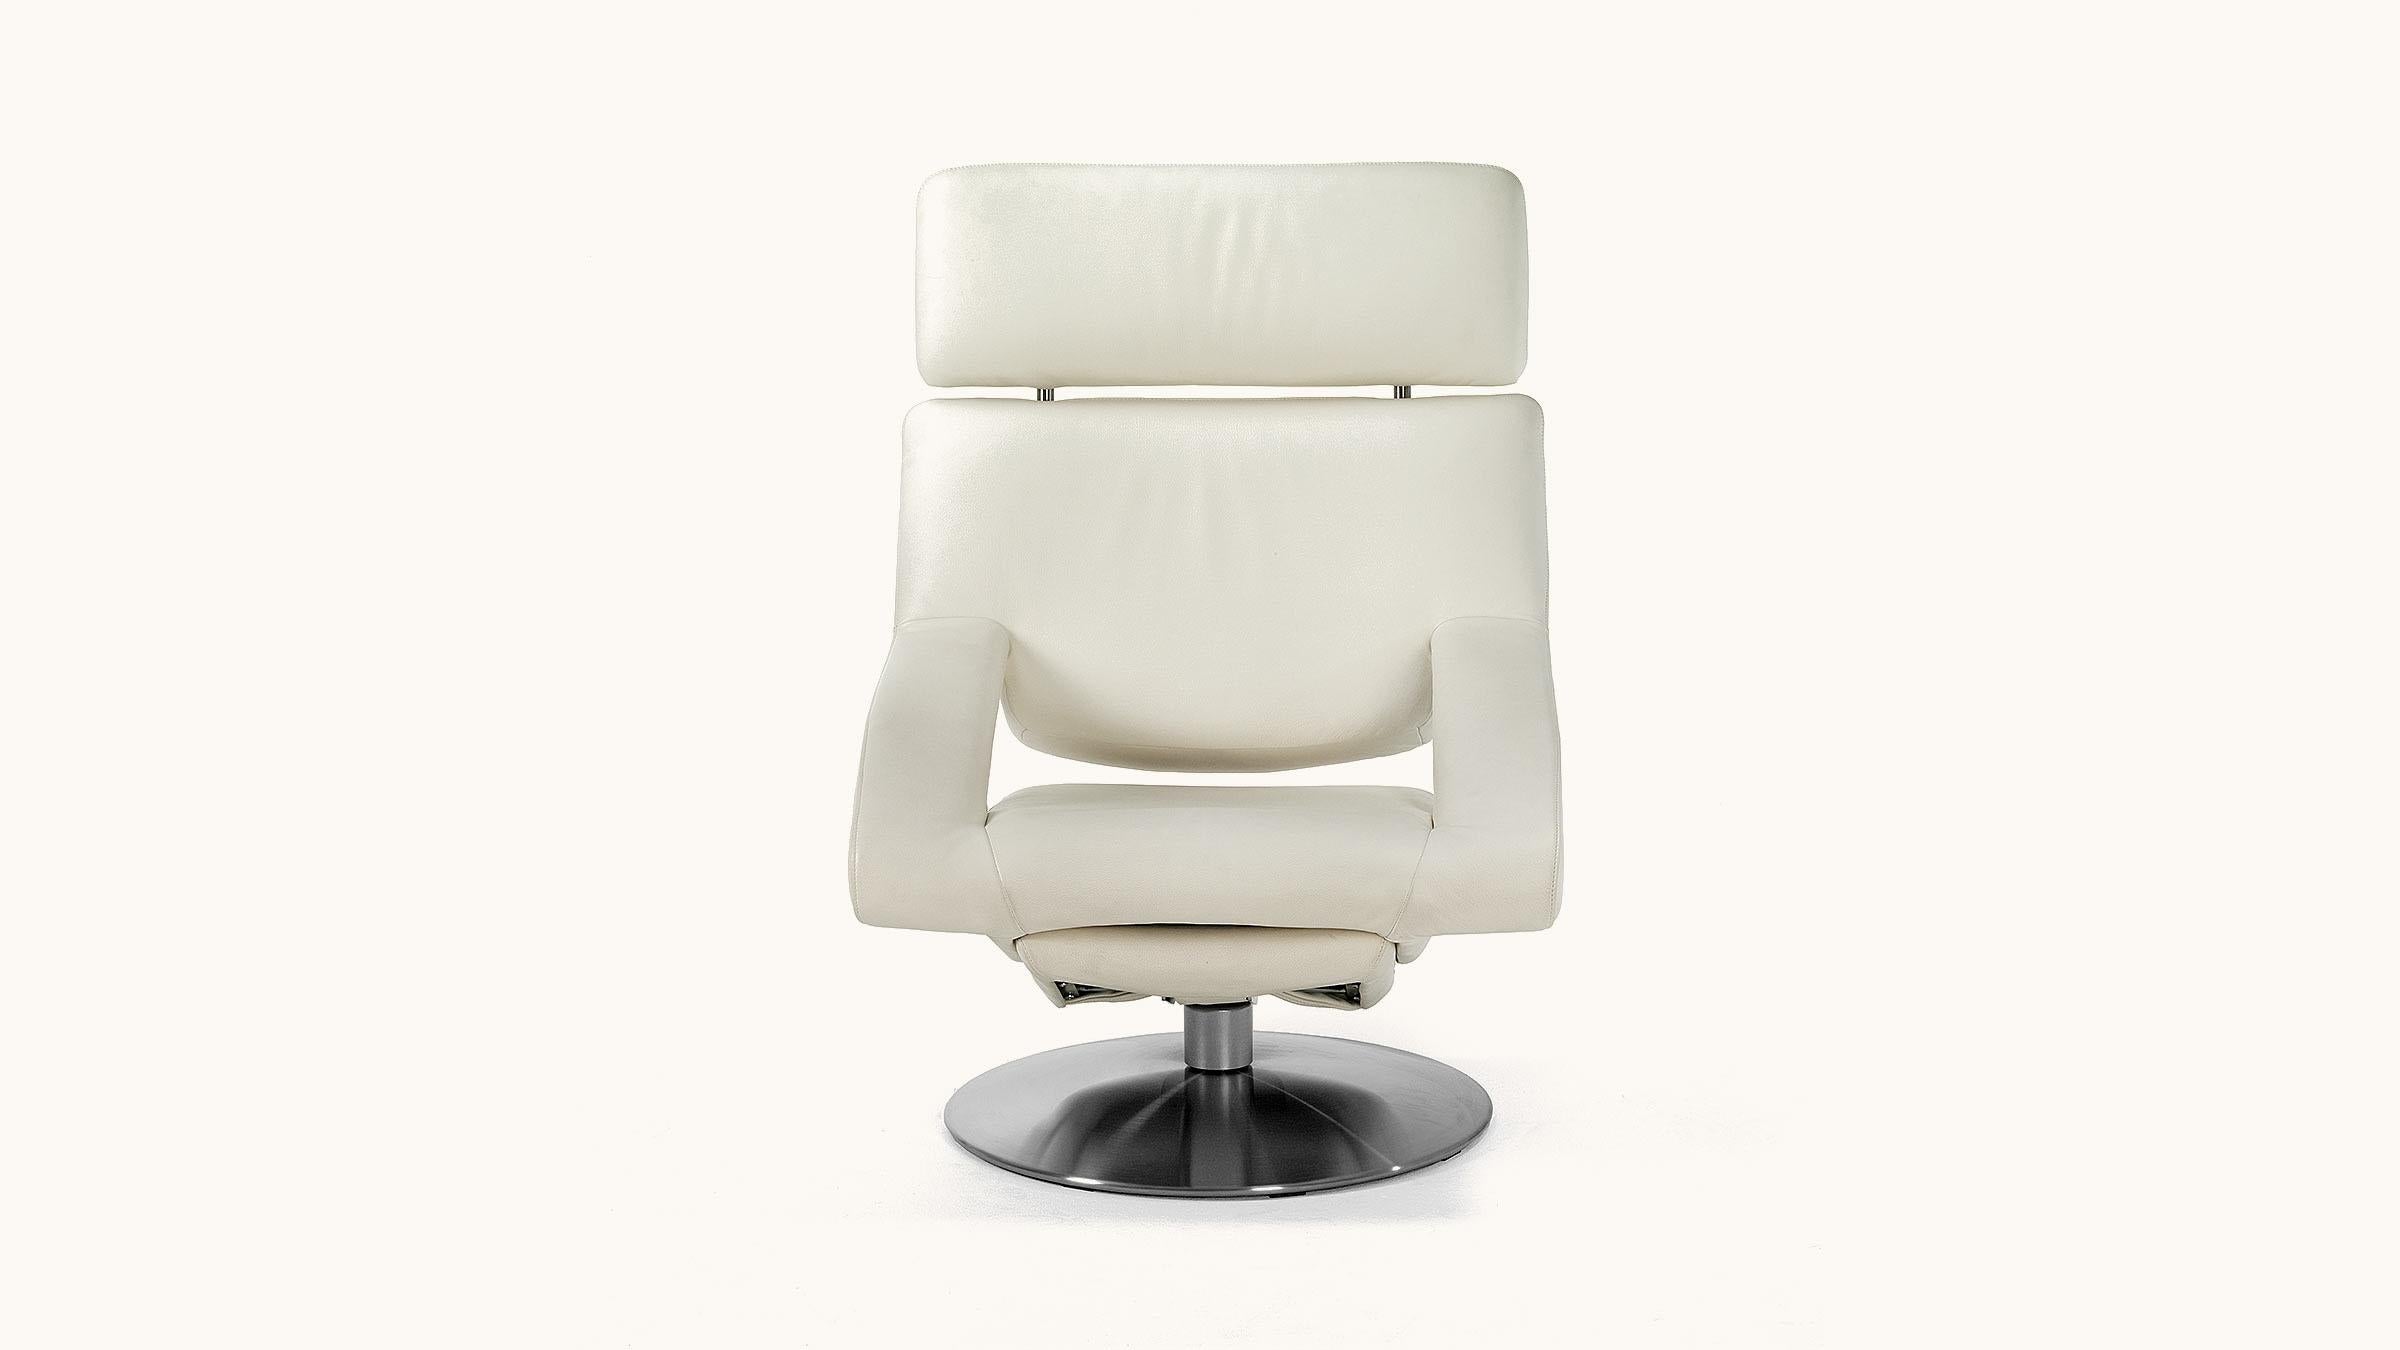 Der Stuhl ist das moderne Einrichtungsobjekt, das die Designer am meisten beschäftigt hat. Kein anderes Möbelstück wurde so sorgfältig getestet, studiert und auf seine Zusammensetzung, seinen Komfort und seine Funktion - Herz und Lunge - hin